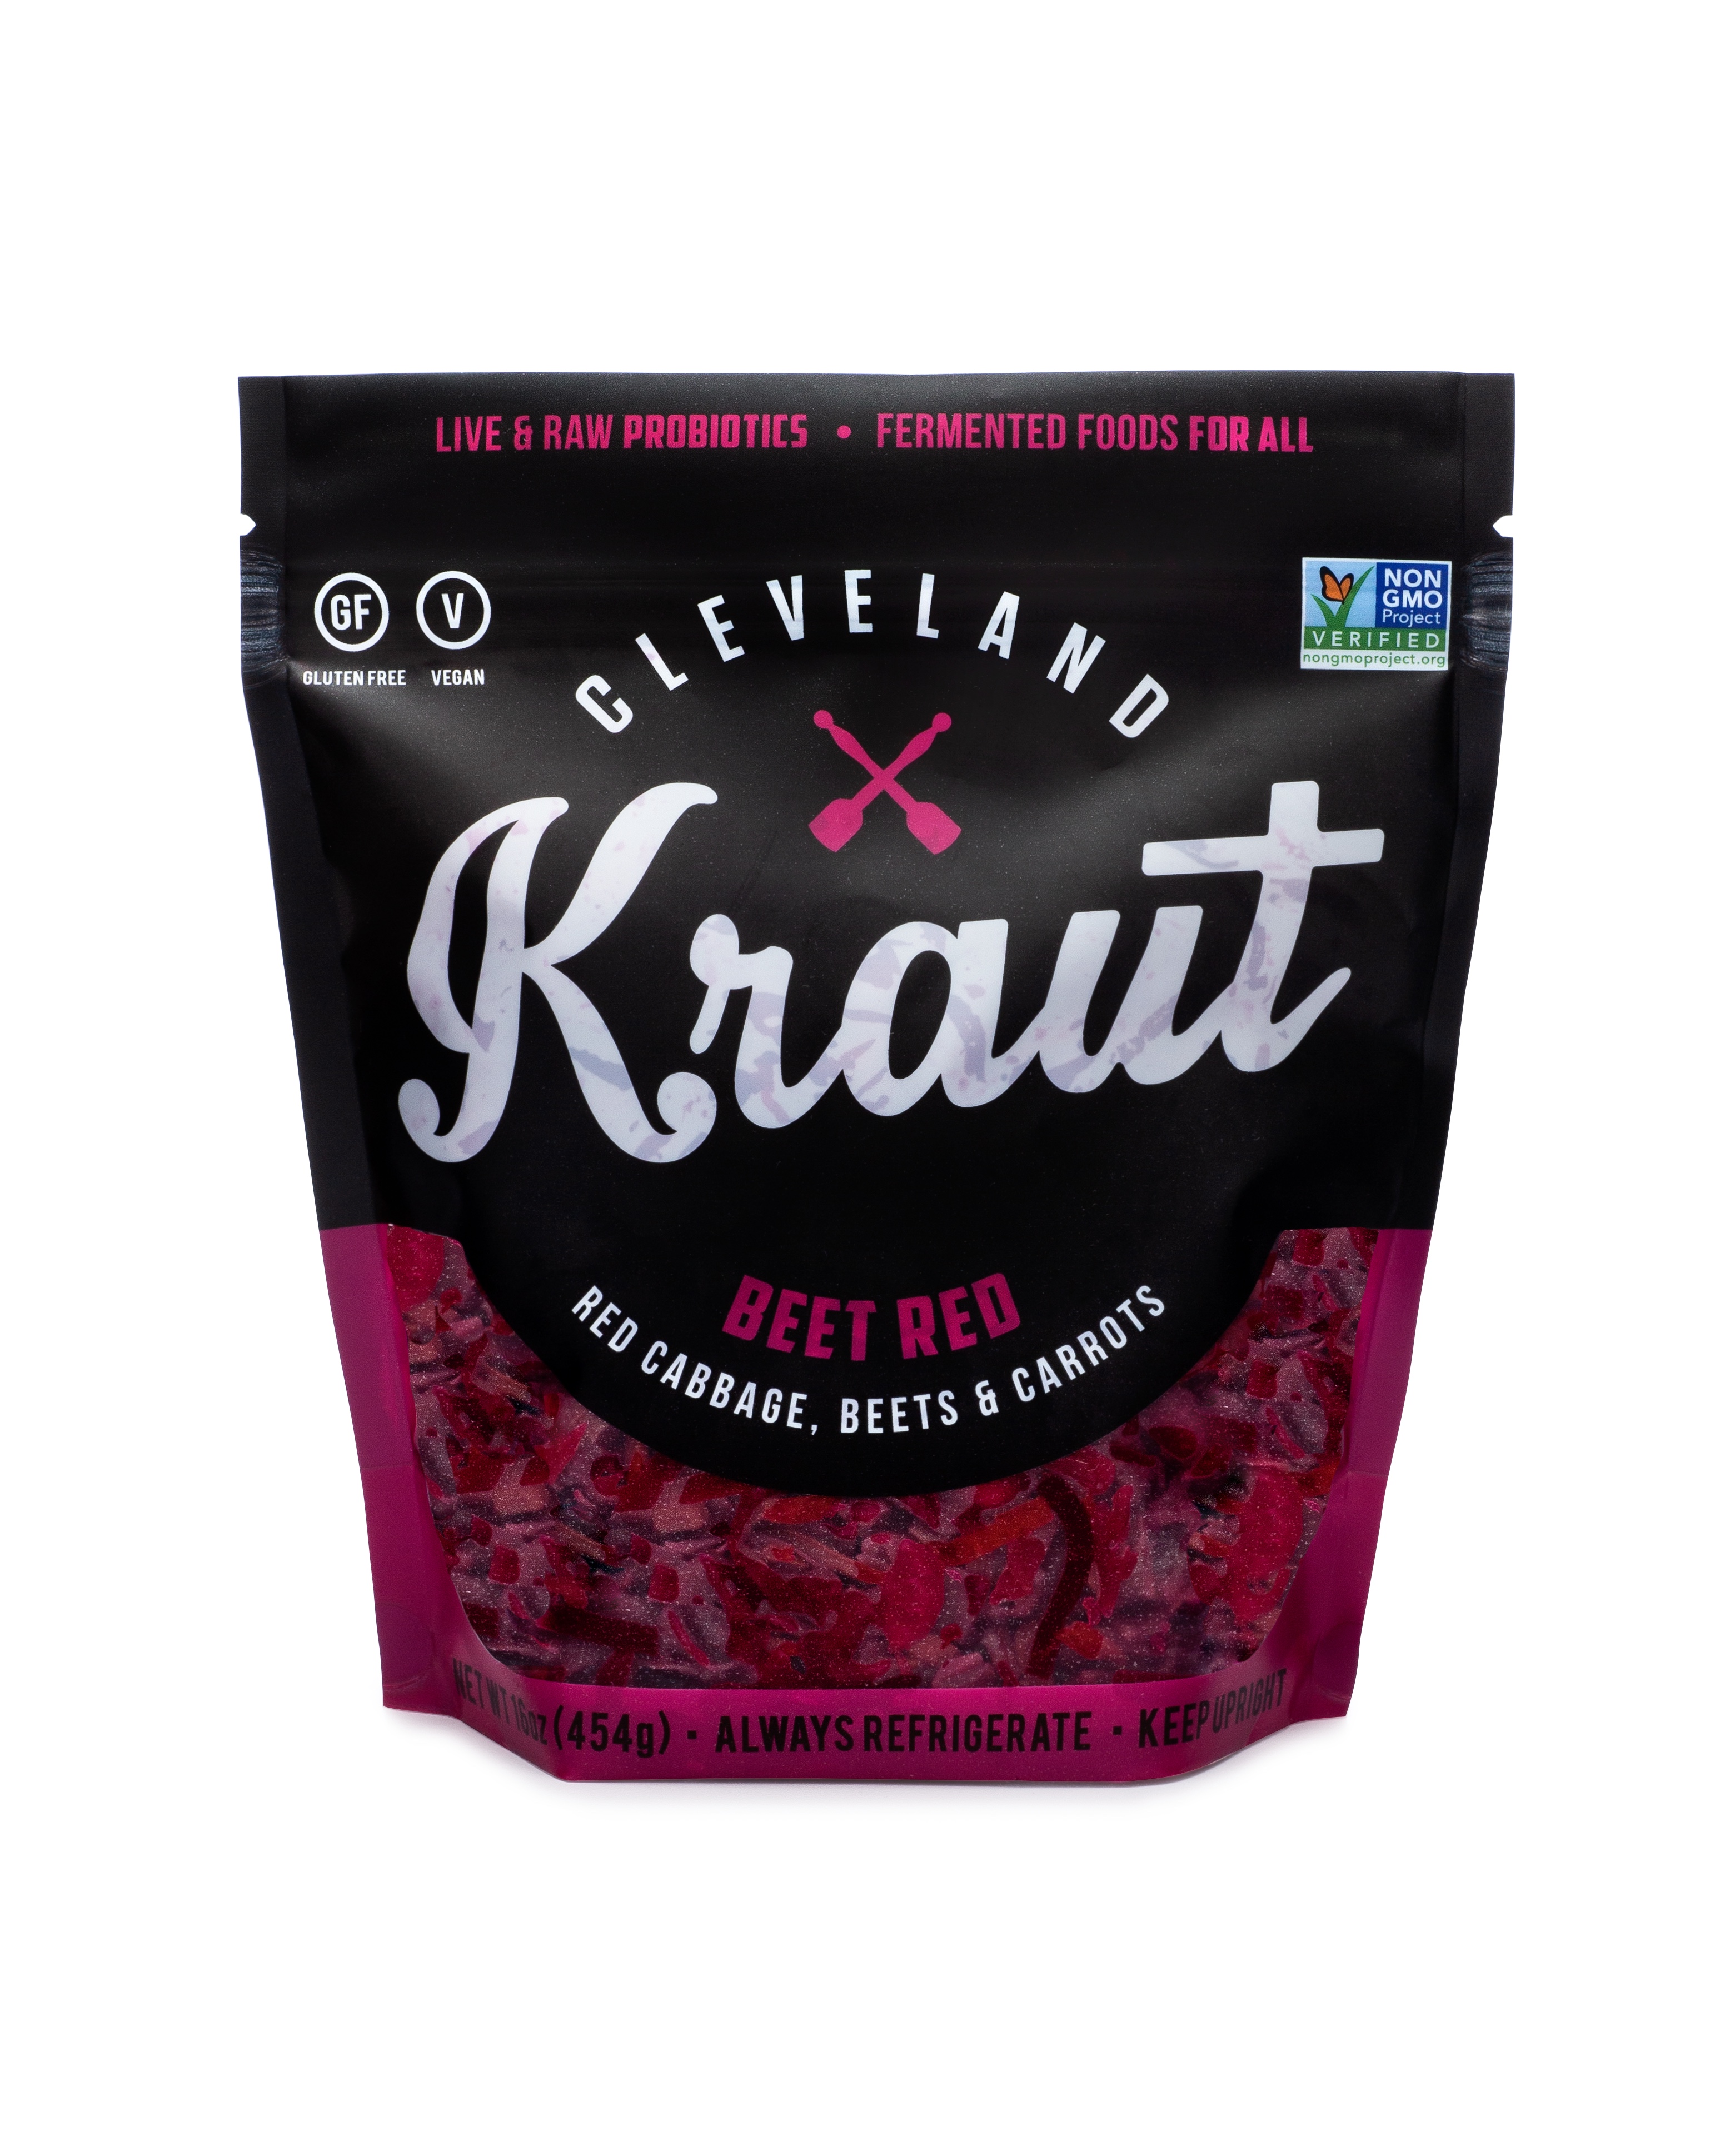 Cleveland Kitchen Kraut Beet Red Sauerkraut, 16 oz - Walmart.com ...